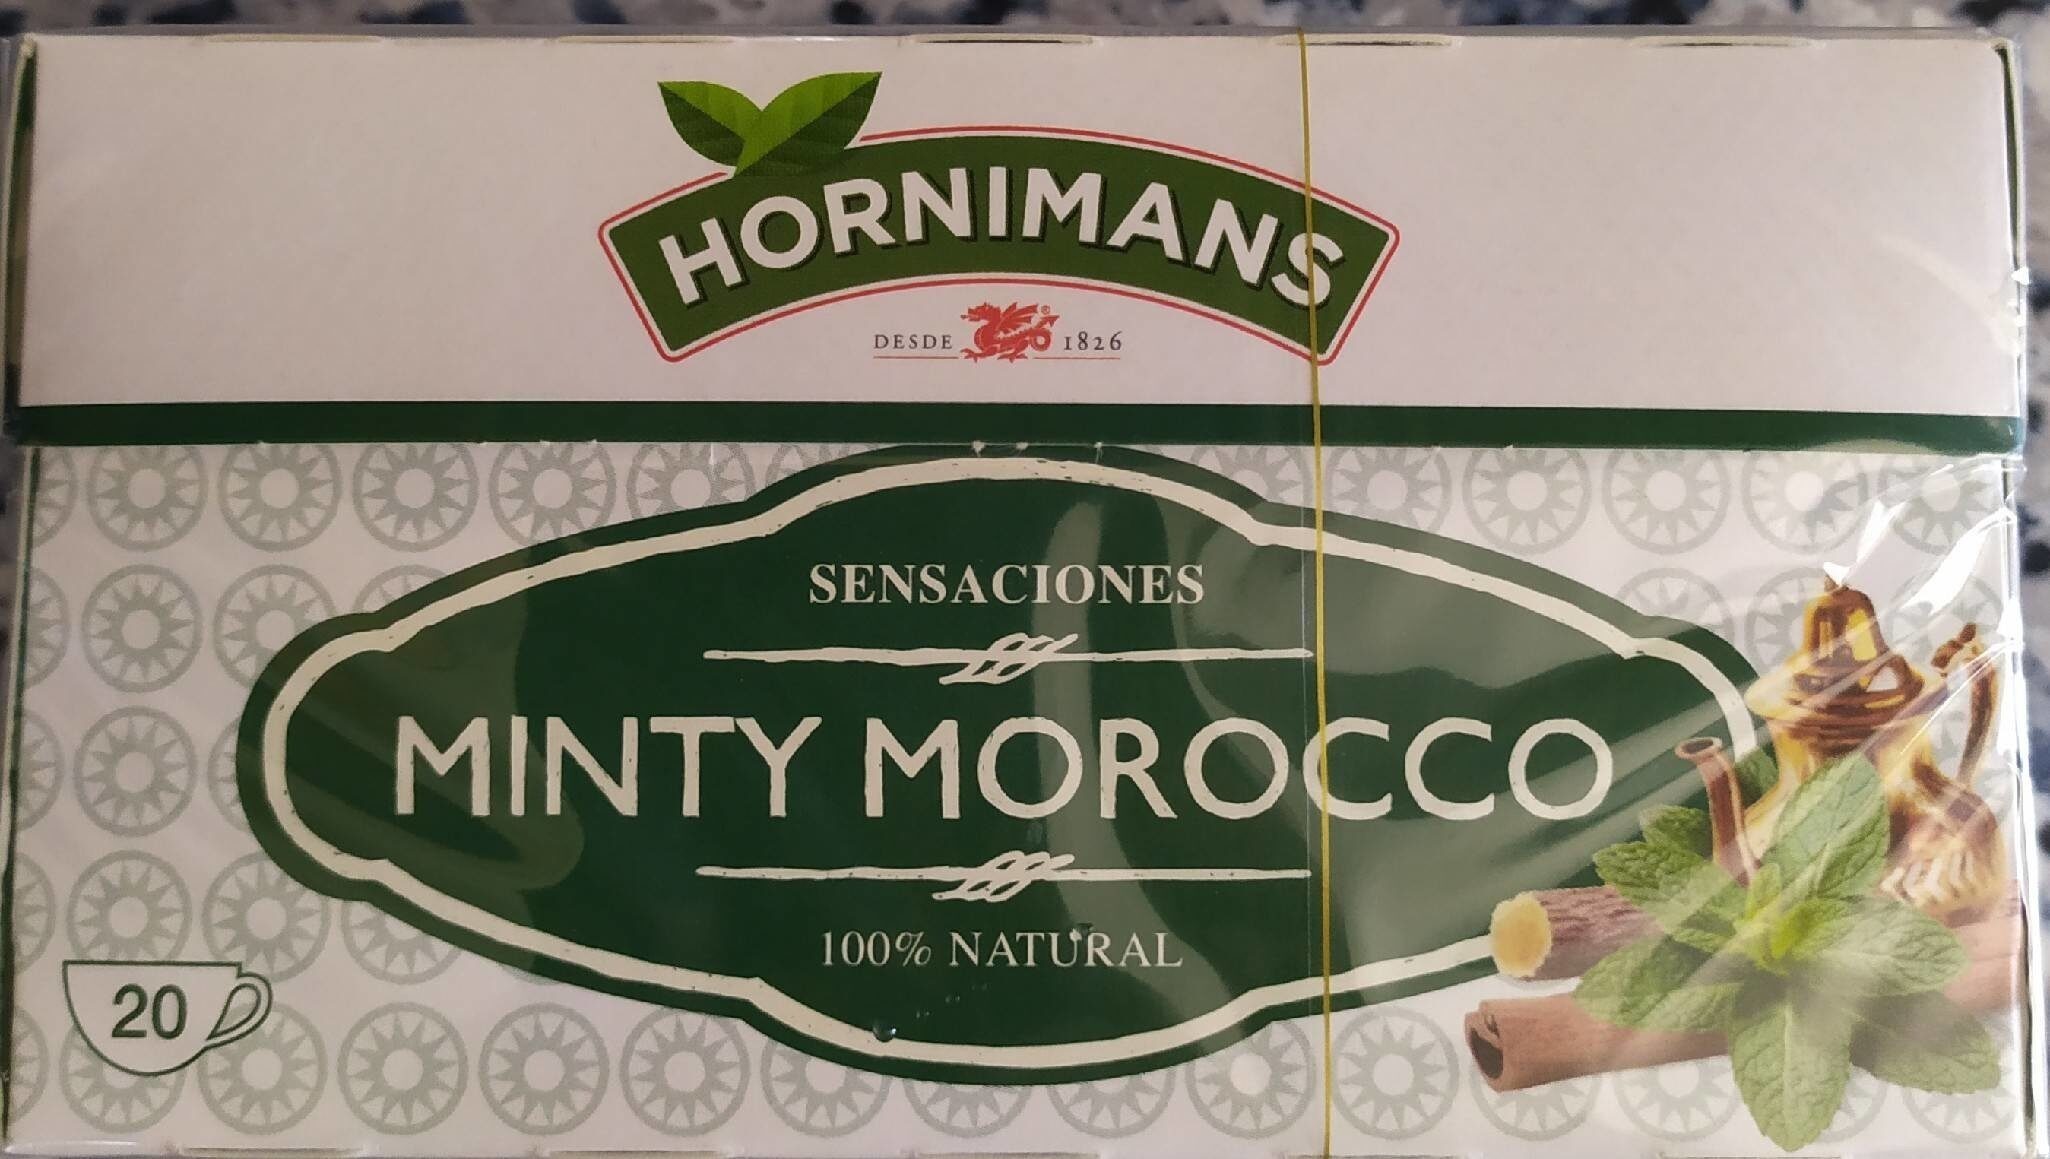 Sensaciones minty morocco - Product - es